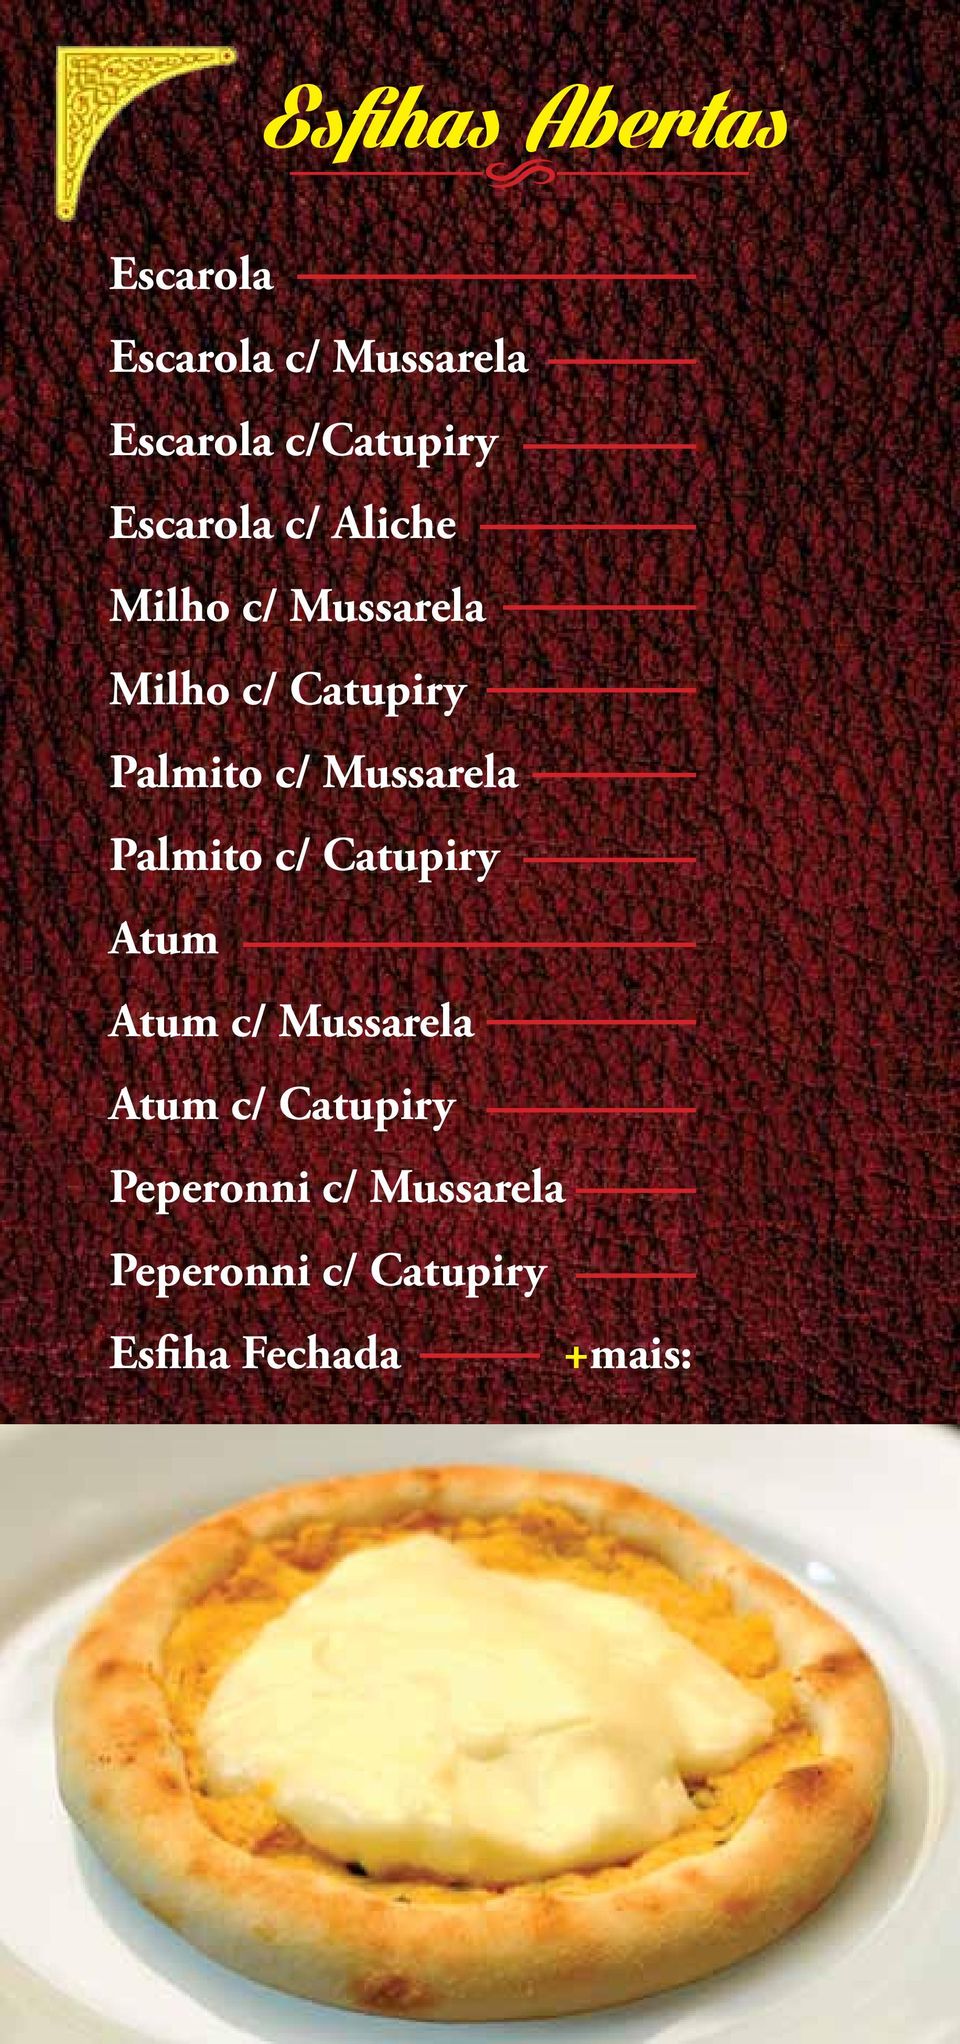 Palmito c/ Mussarela Palmito c/ Catupiry Atum Atum c/ Mussarela